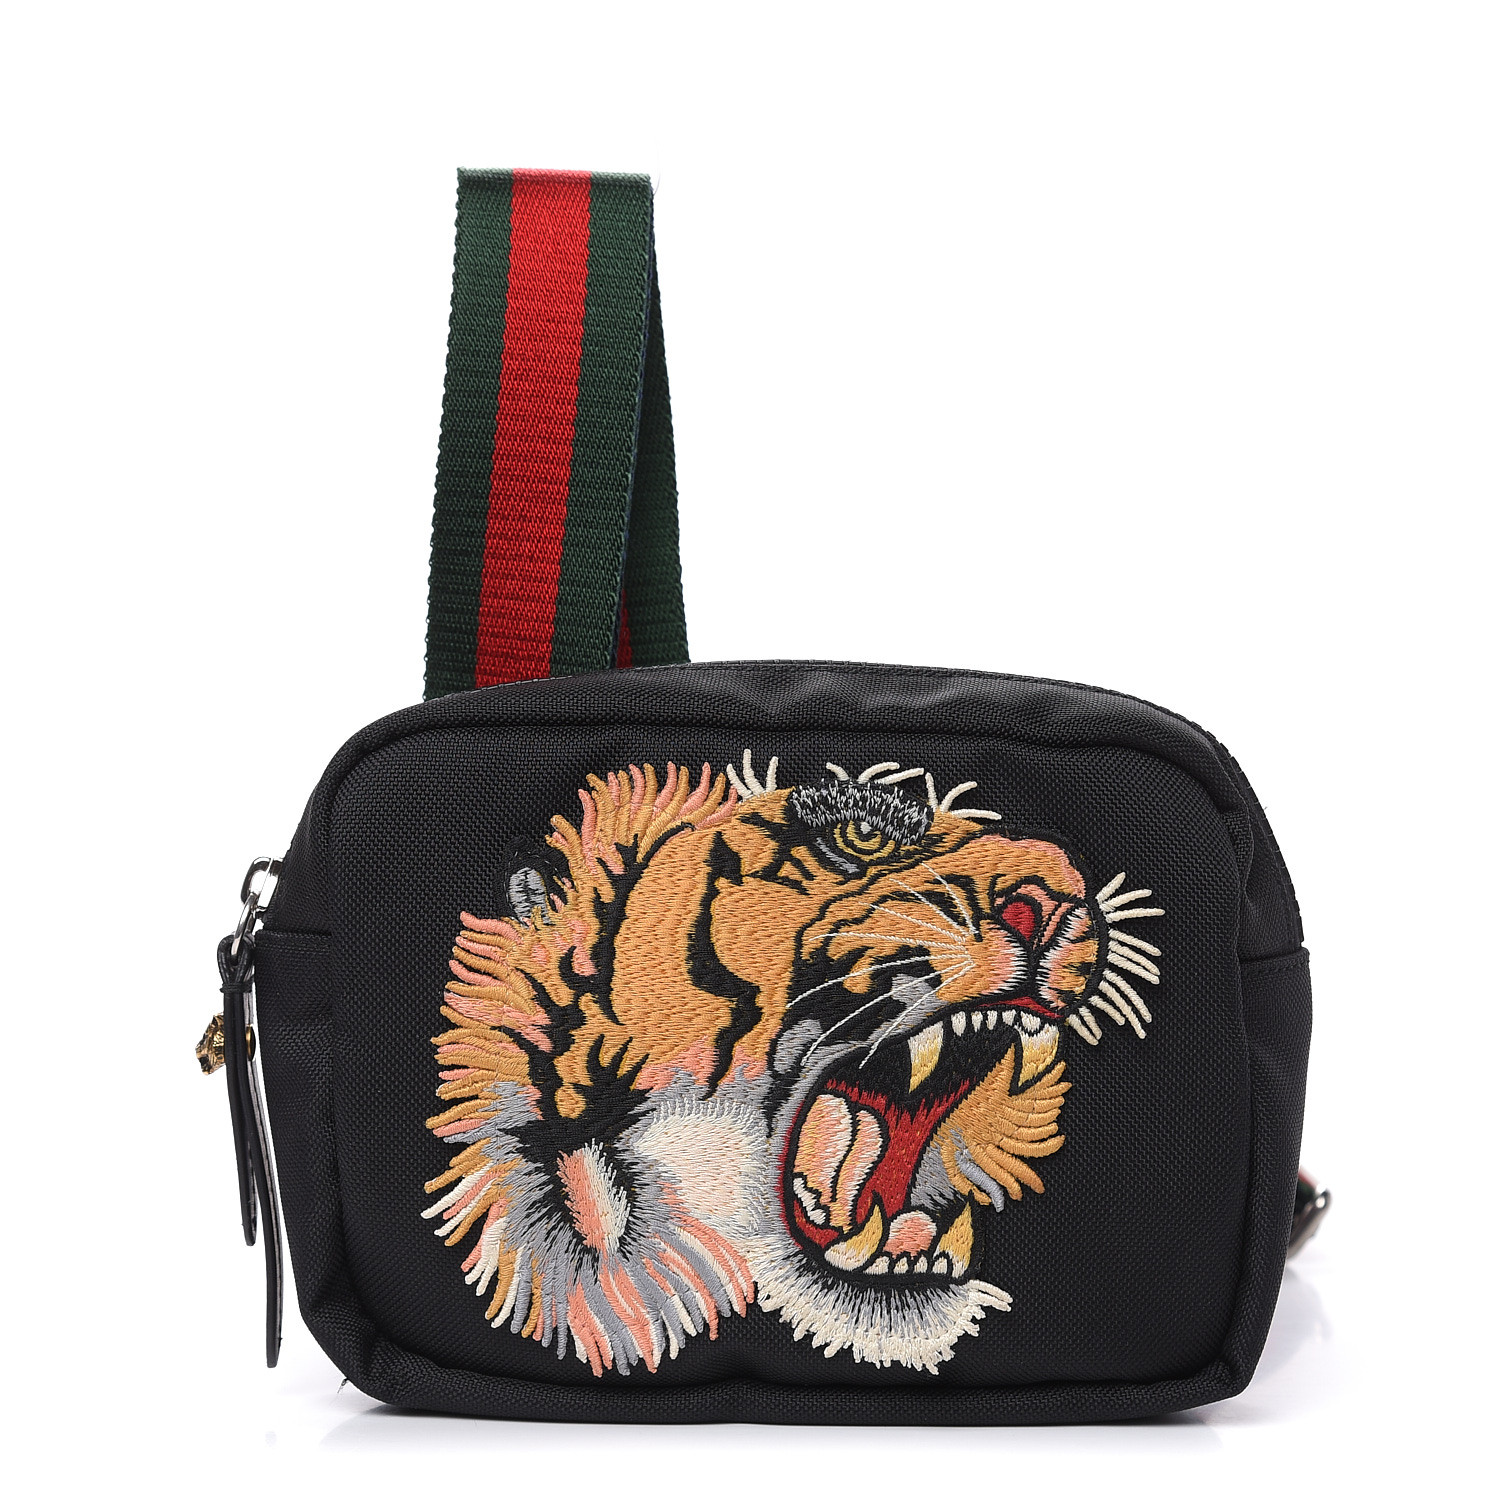 GUCCI Canvas Embroidered Tiger Messenger Bag Black 491983